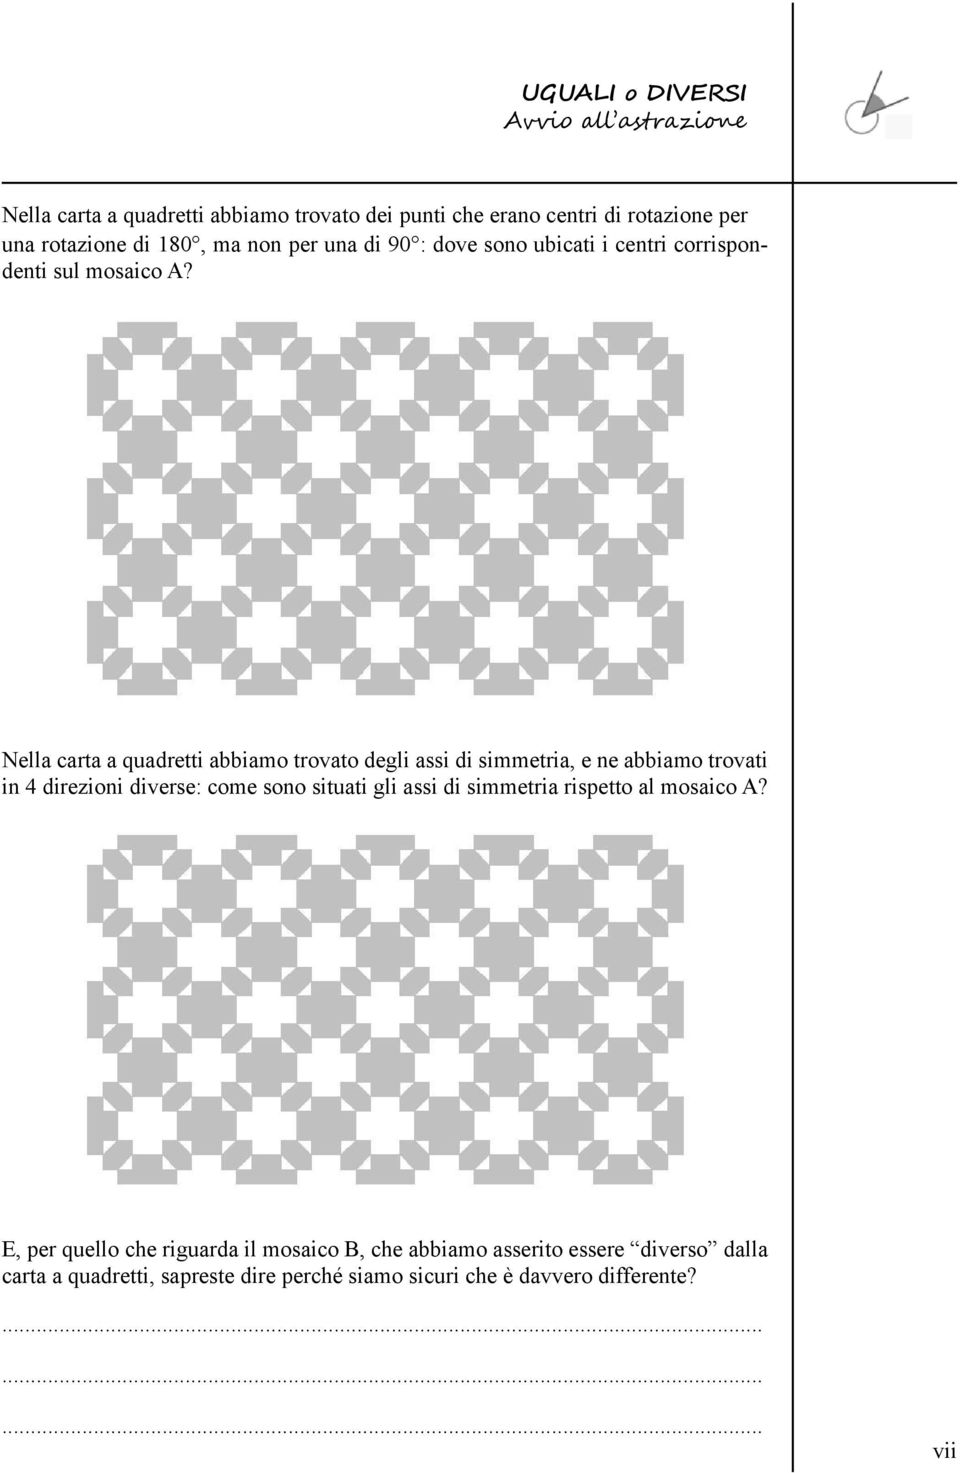 Nella carta a quadretti abbiamo trovato degli assi di simmetria, e ne abbiamo trovati in 4 direzioni diverse: come sono situati